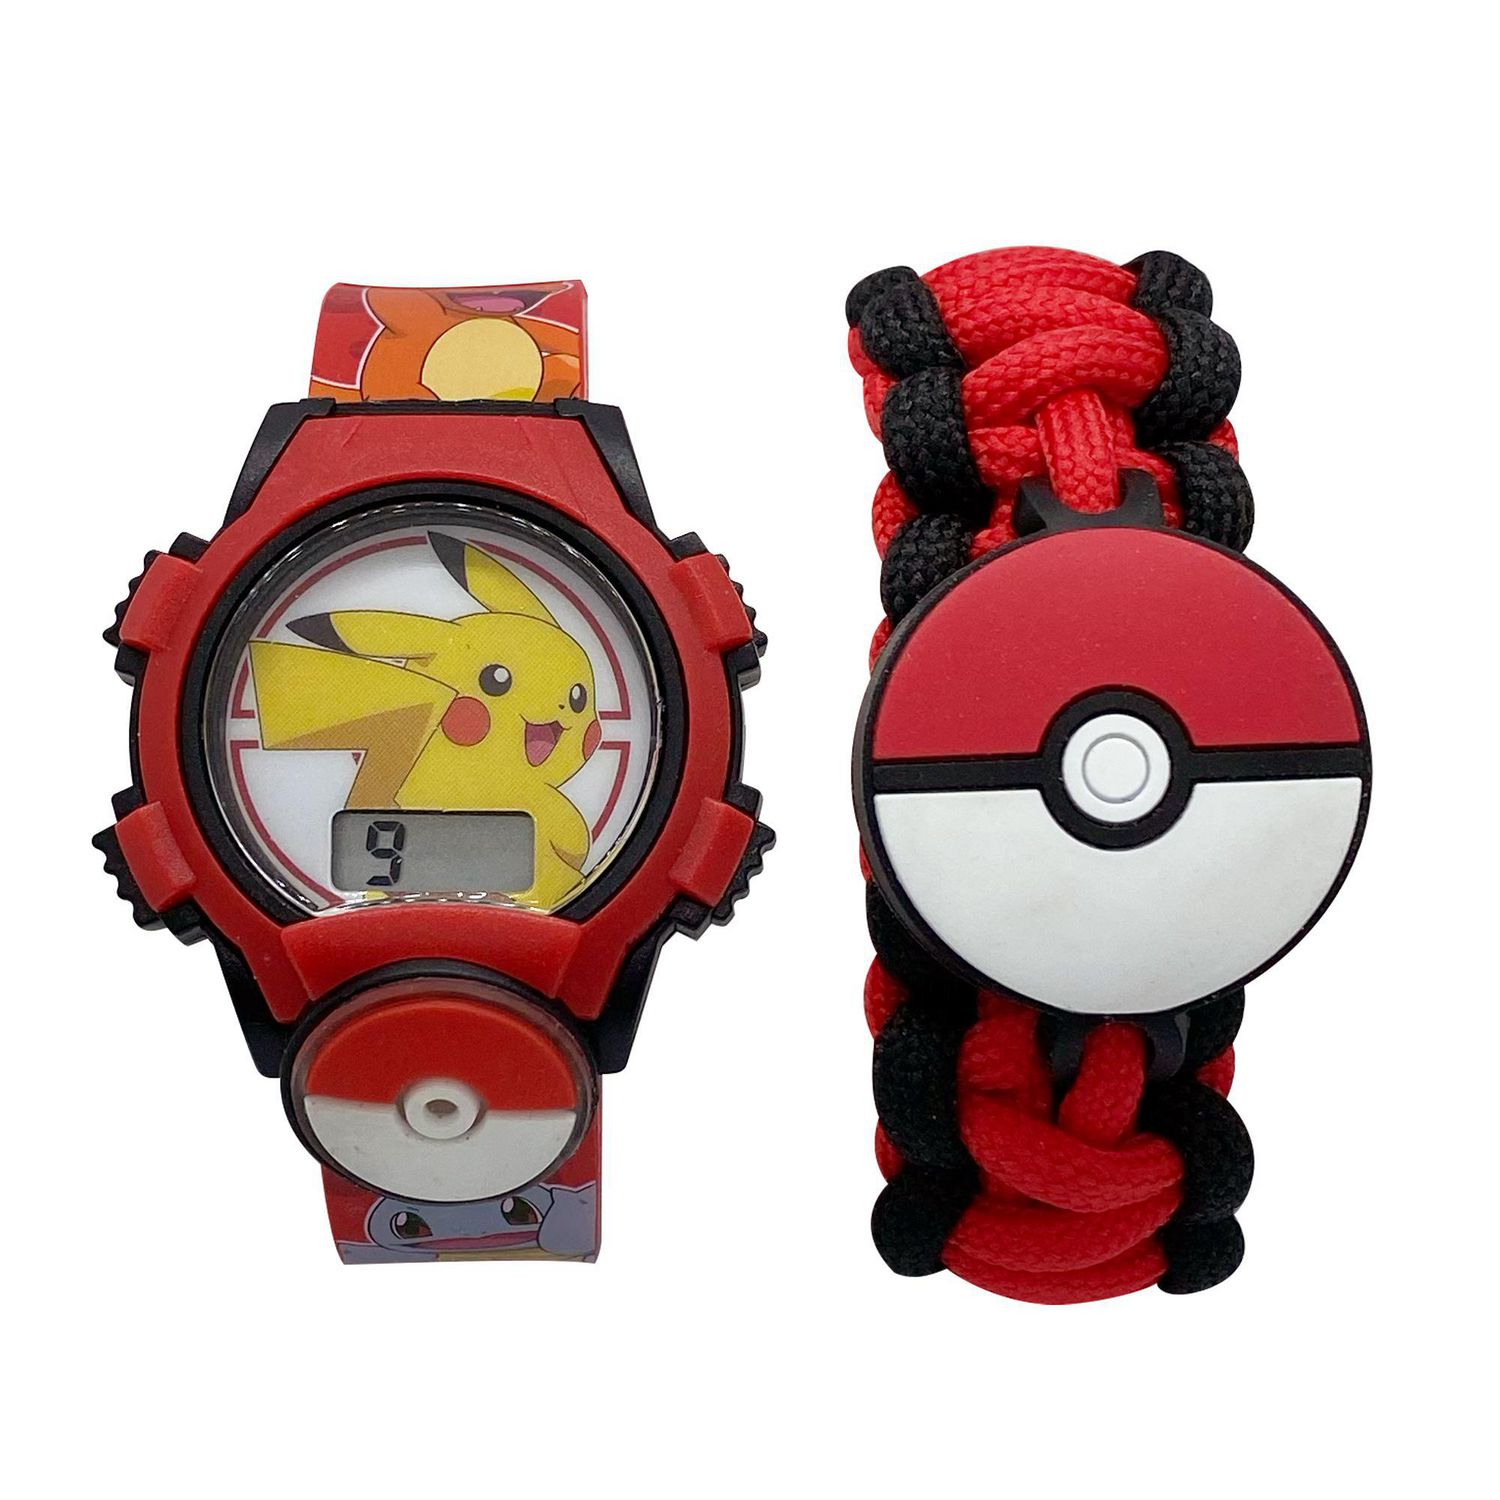 Pokémon Montre-bracelet - Numérique » Expédition rapide